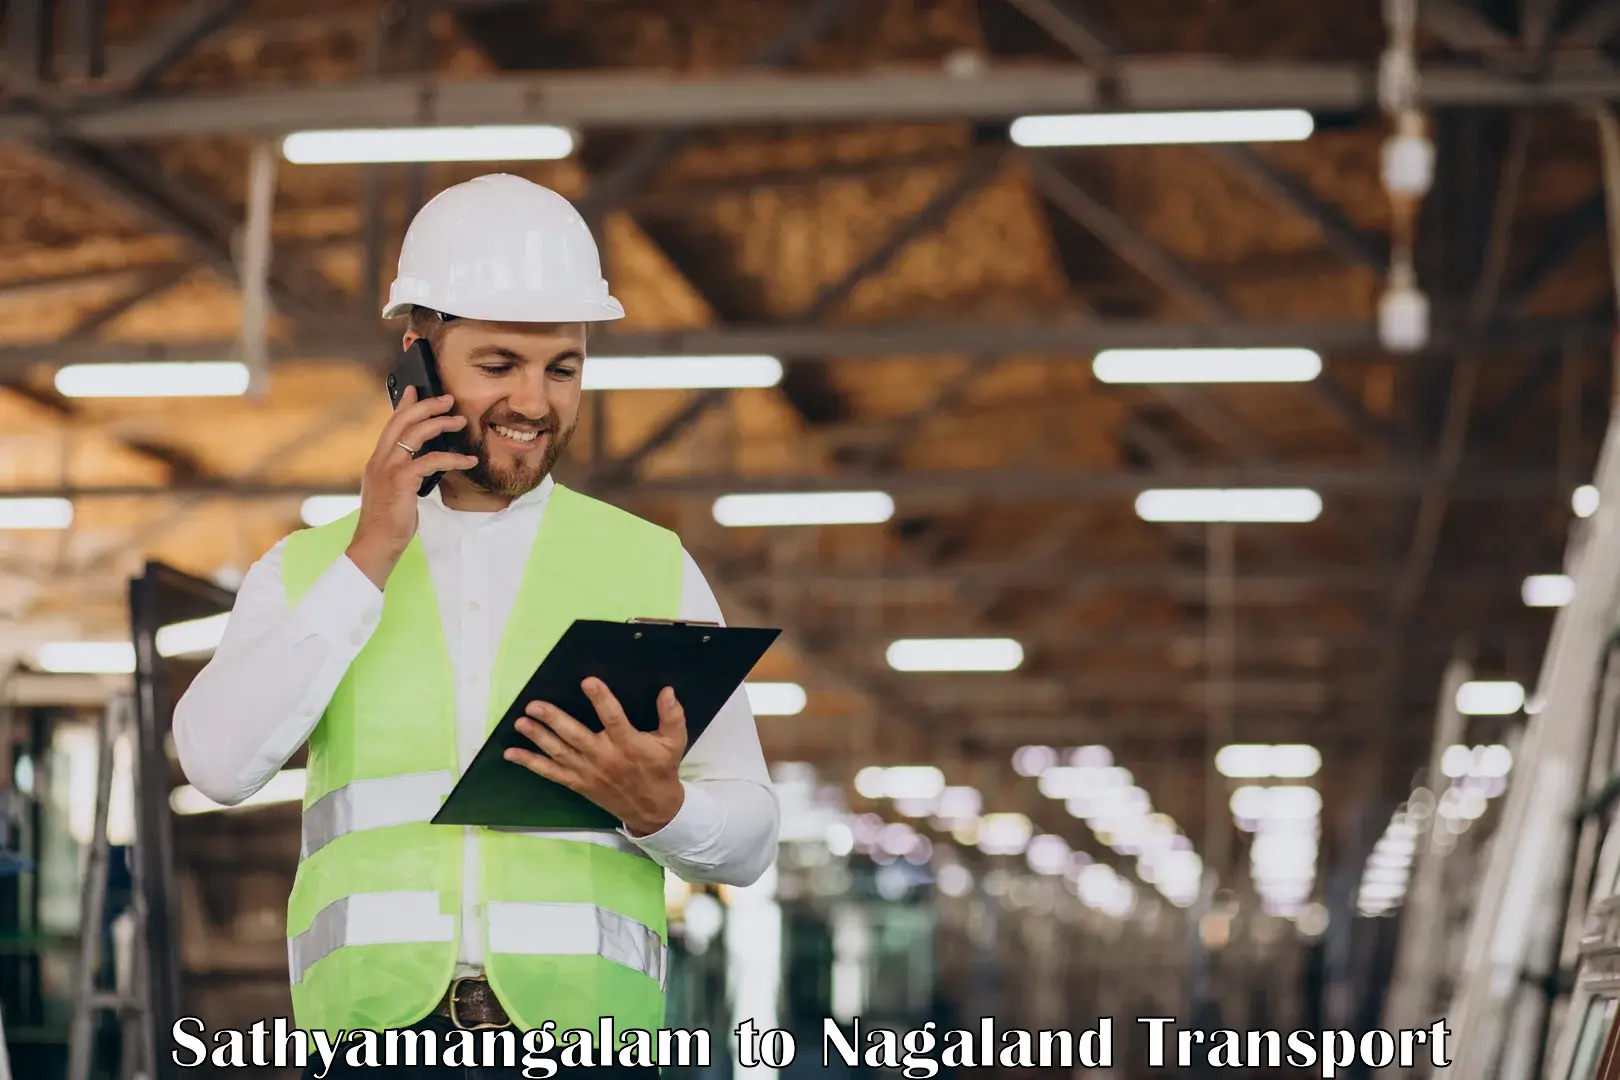 International cargo transportation services Sathyamangalam to Nagaland